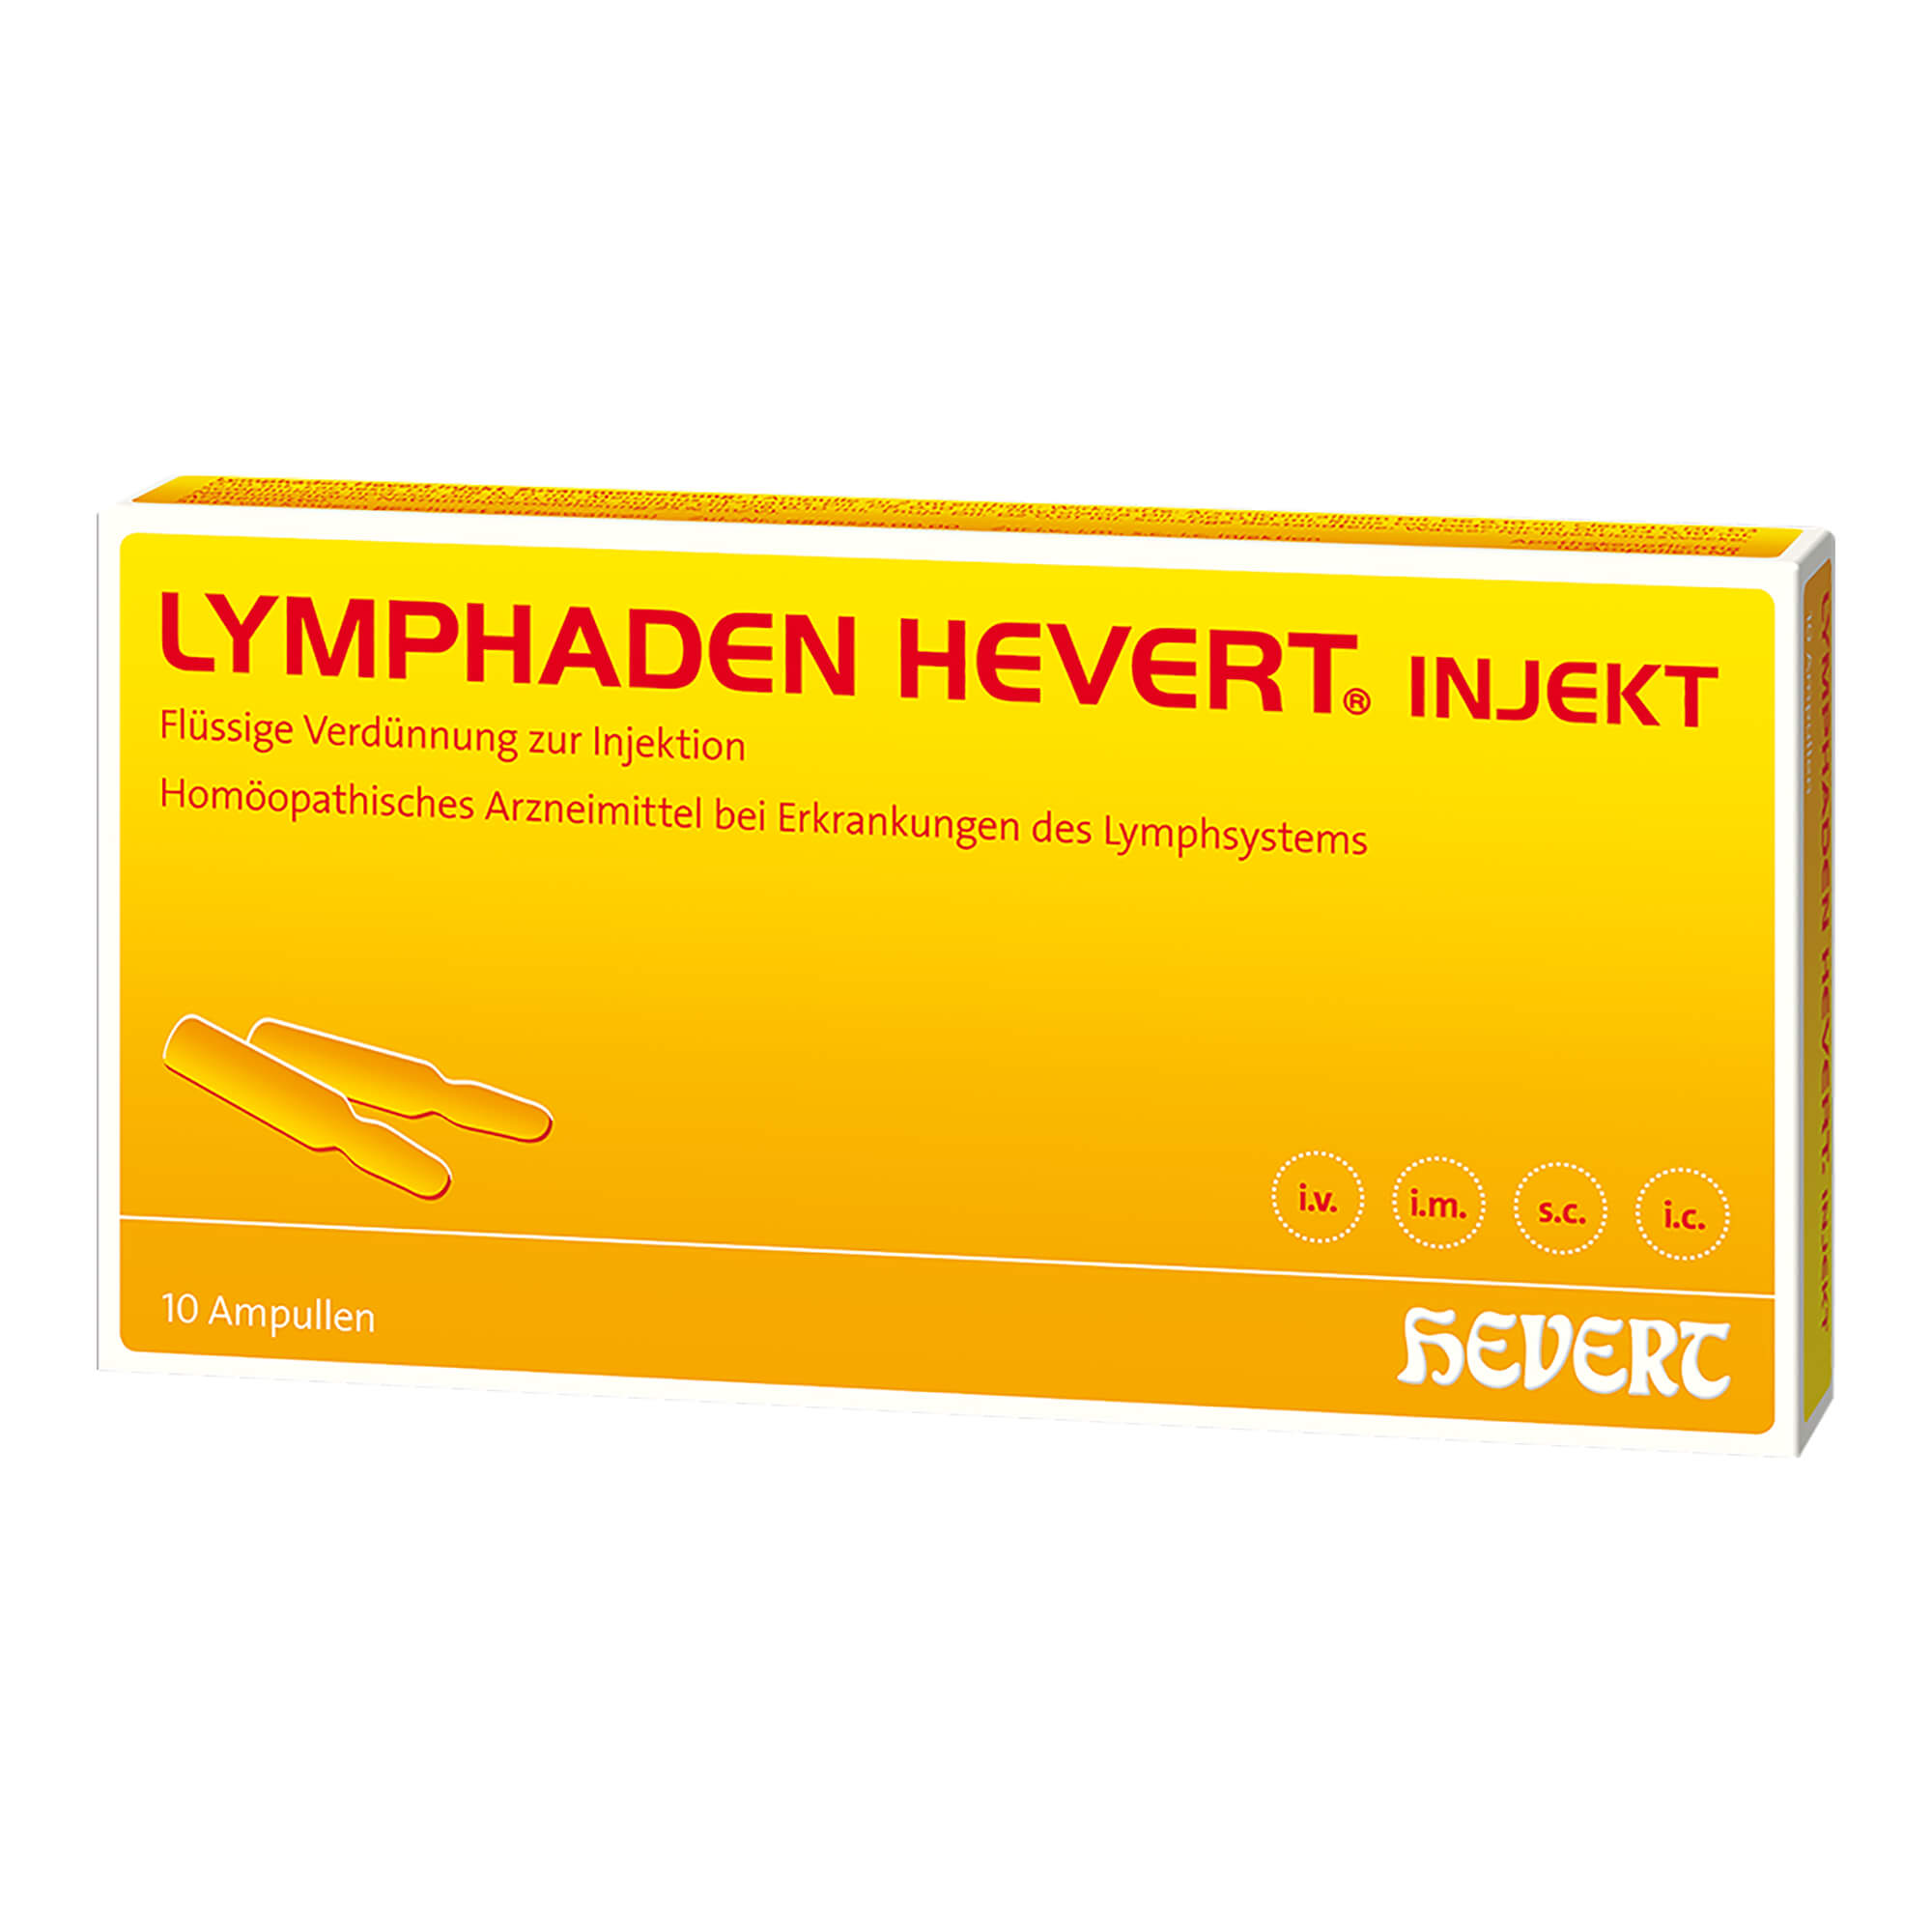 Homöopathisches Arzneimittel bei Erkrankungen des Lymphsystems.